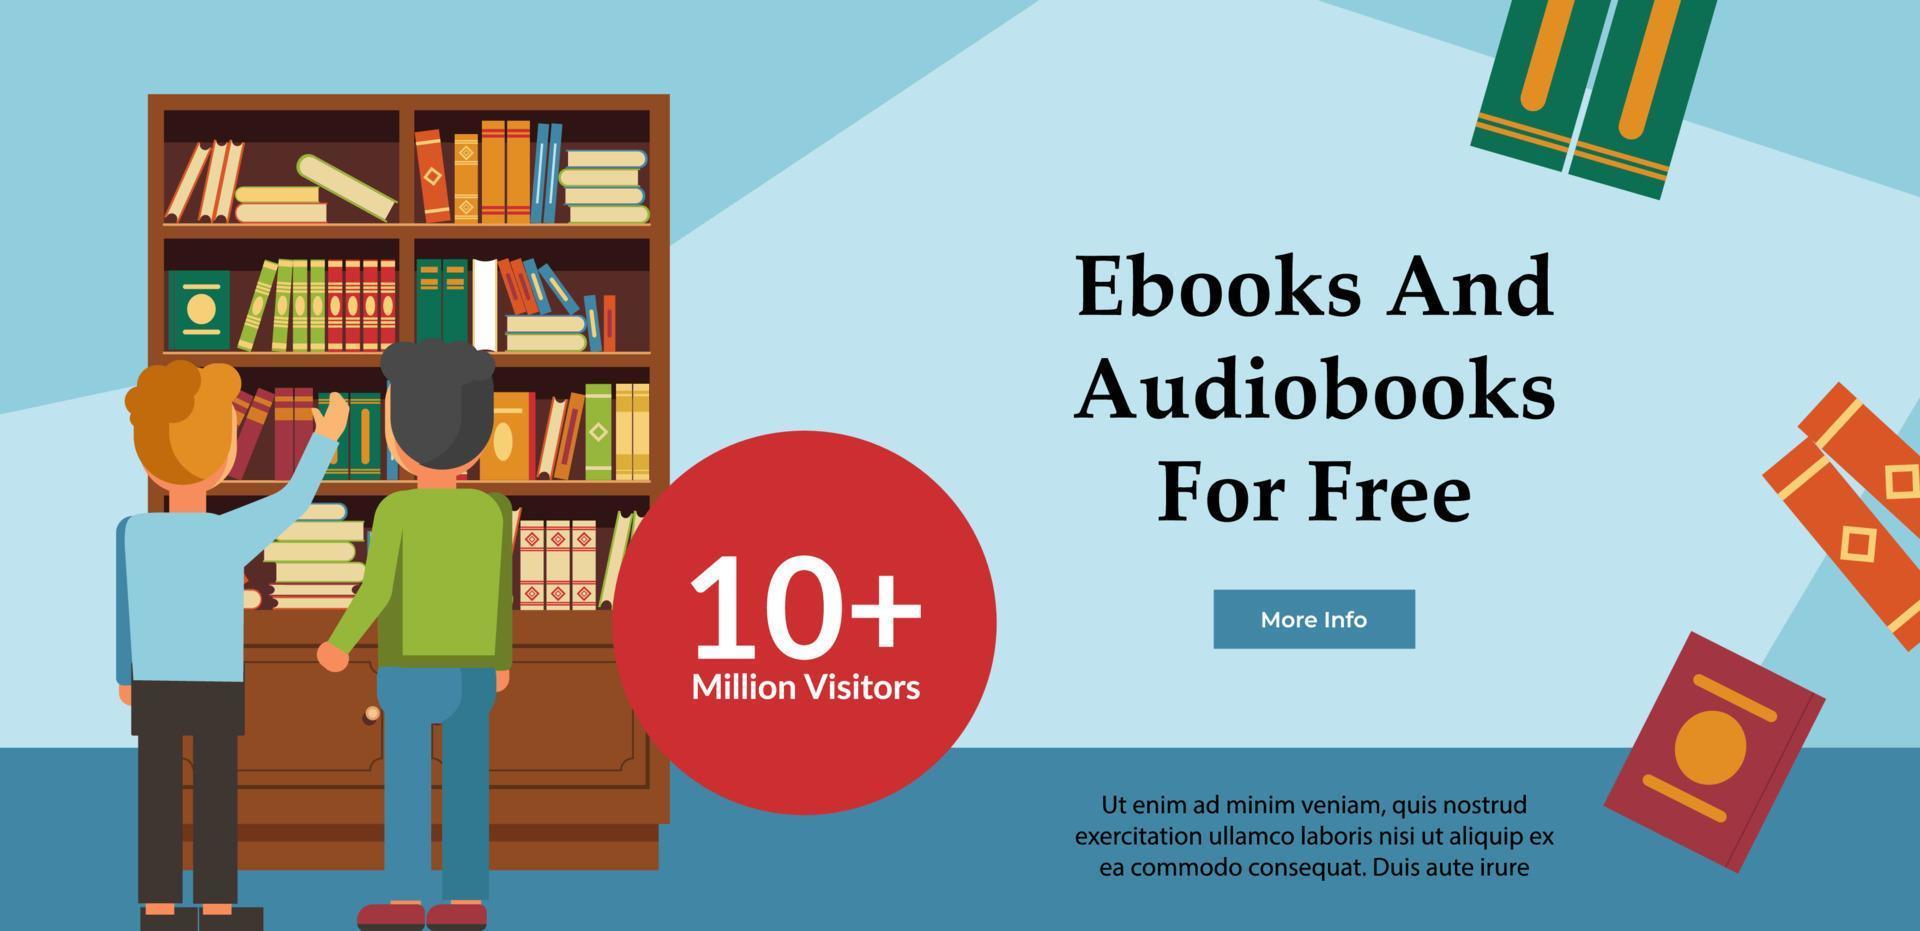 libros electrónicos y audiolibros gratis, recursos en línea vector